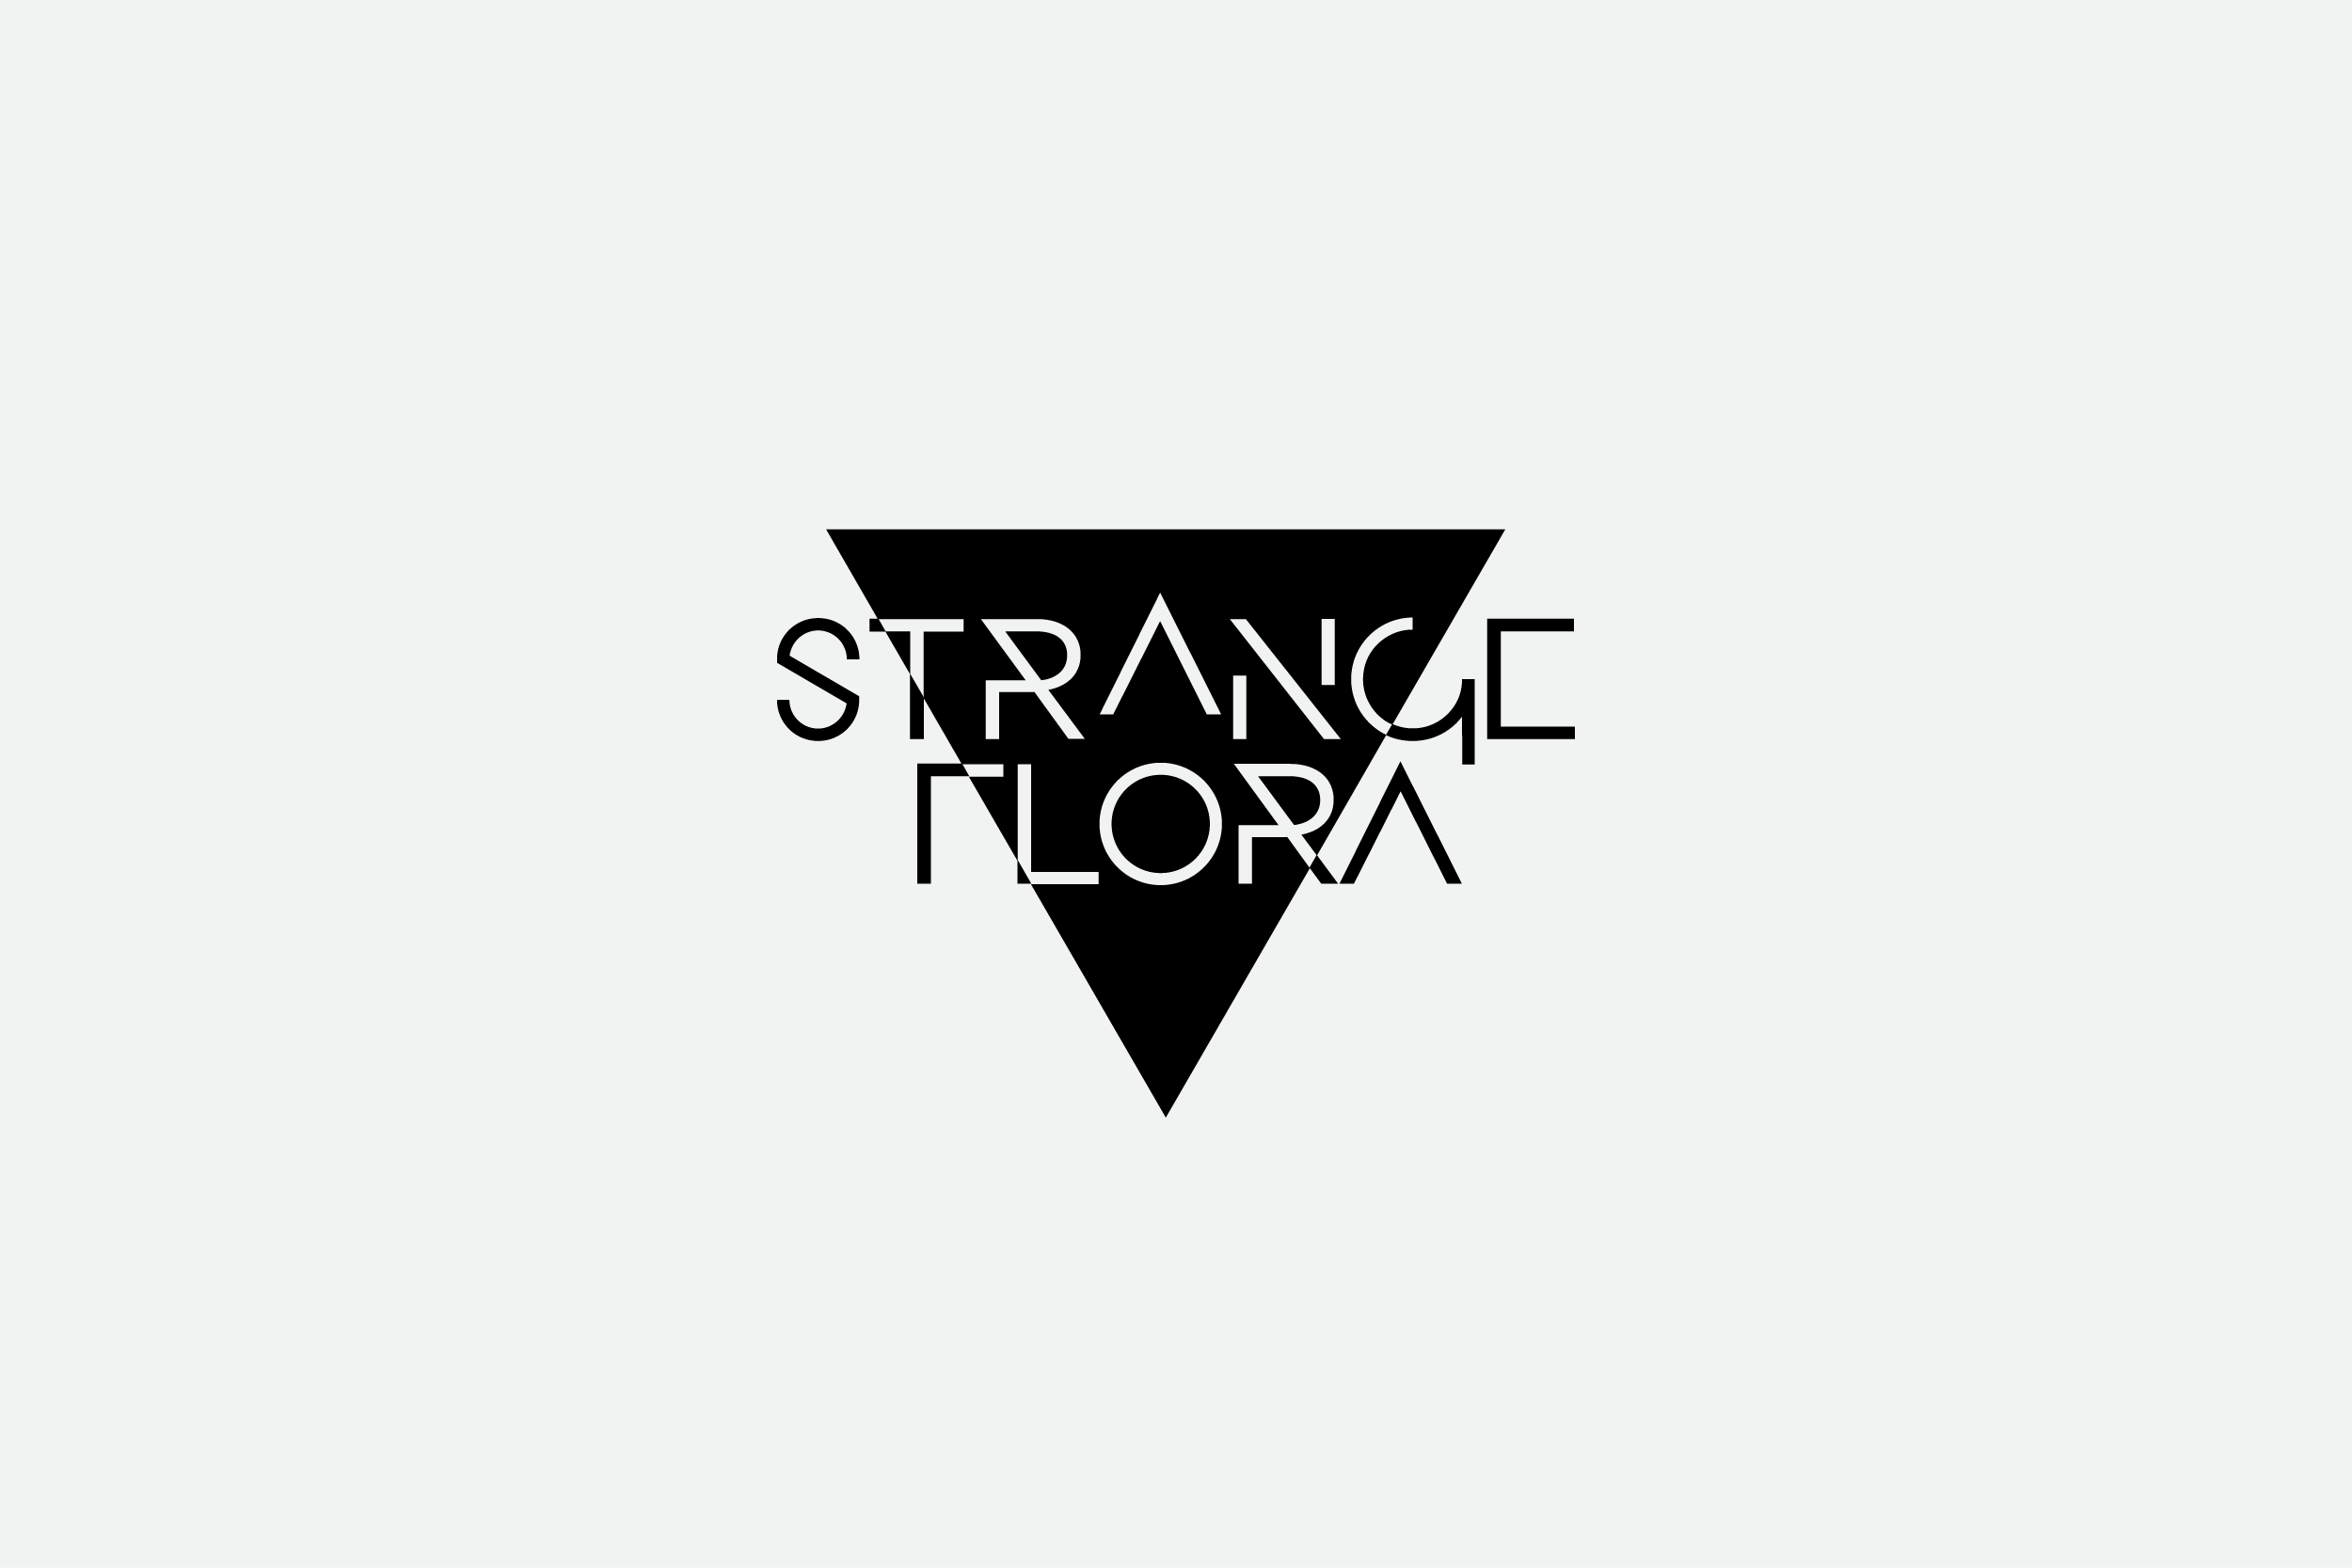 logo_StrangeFlora